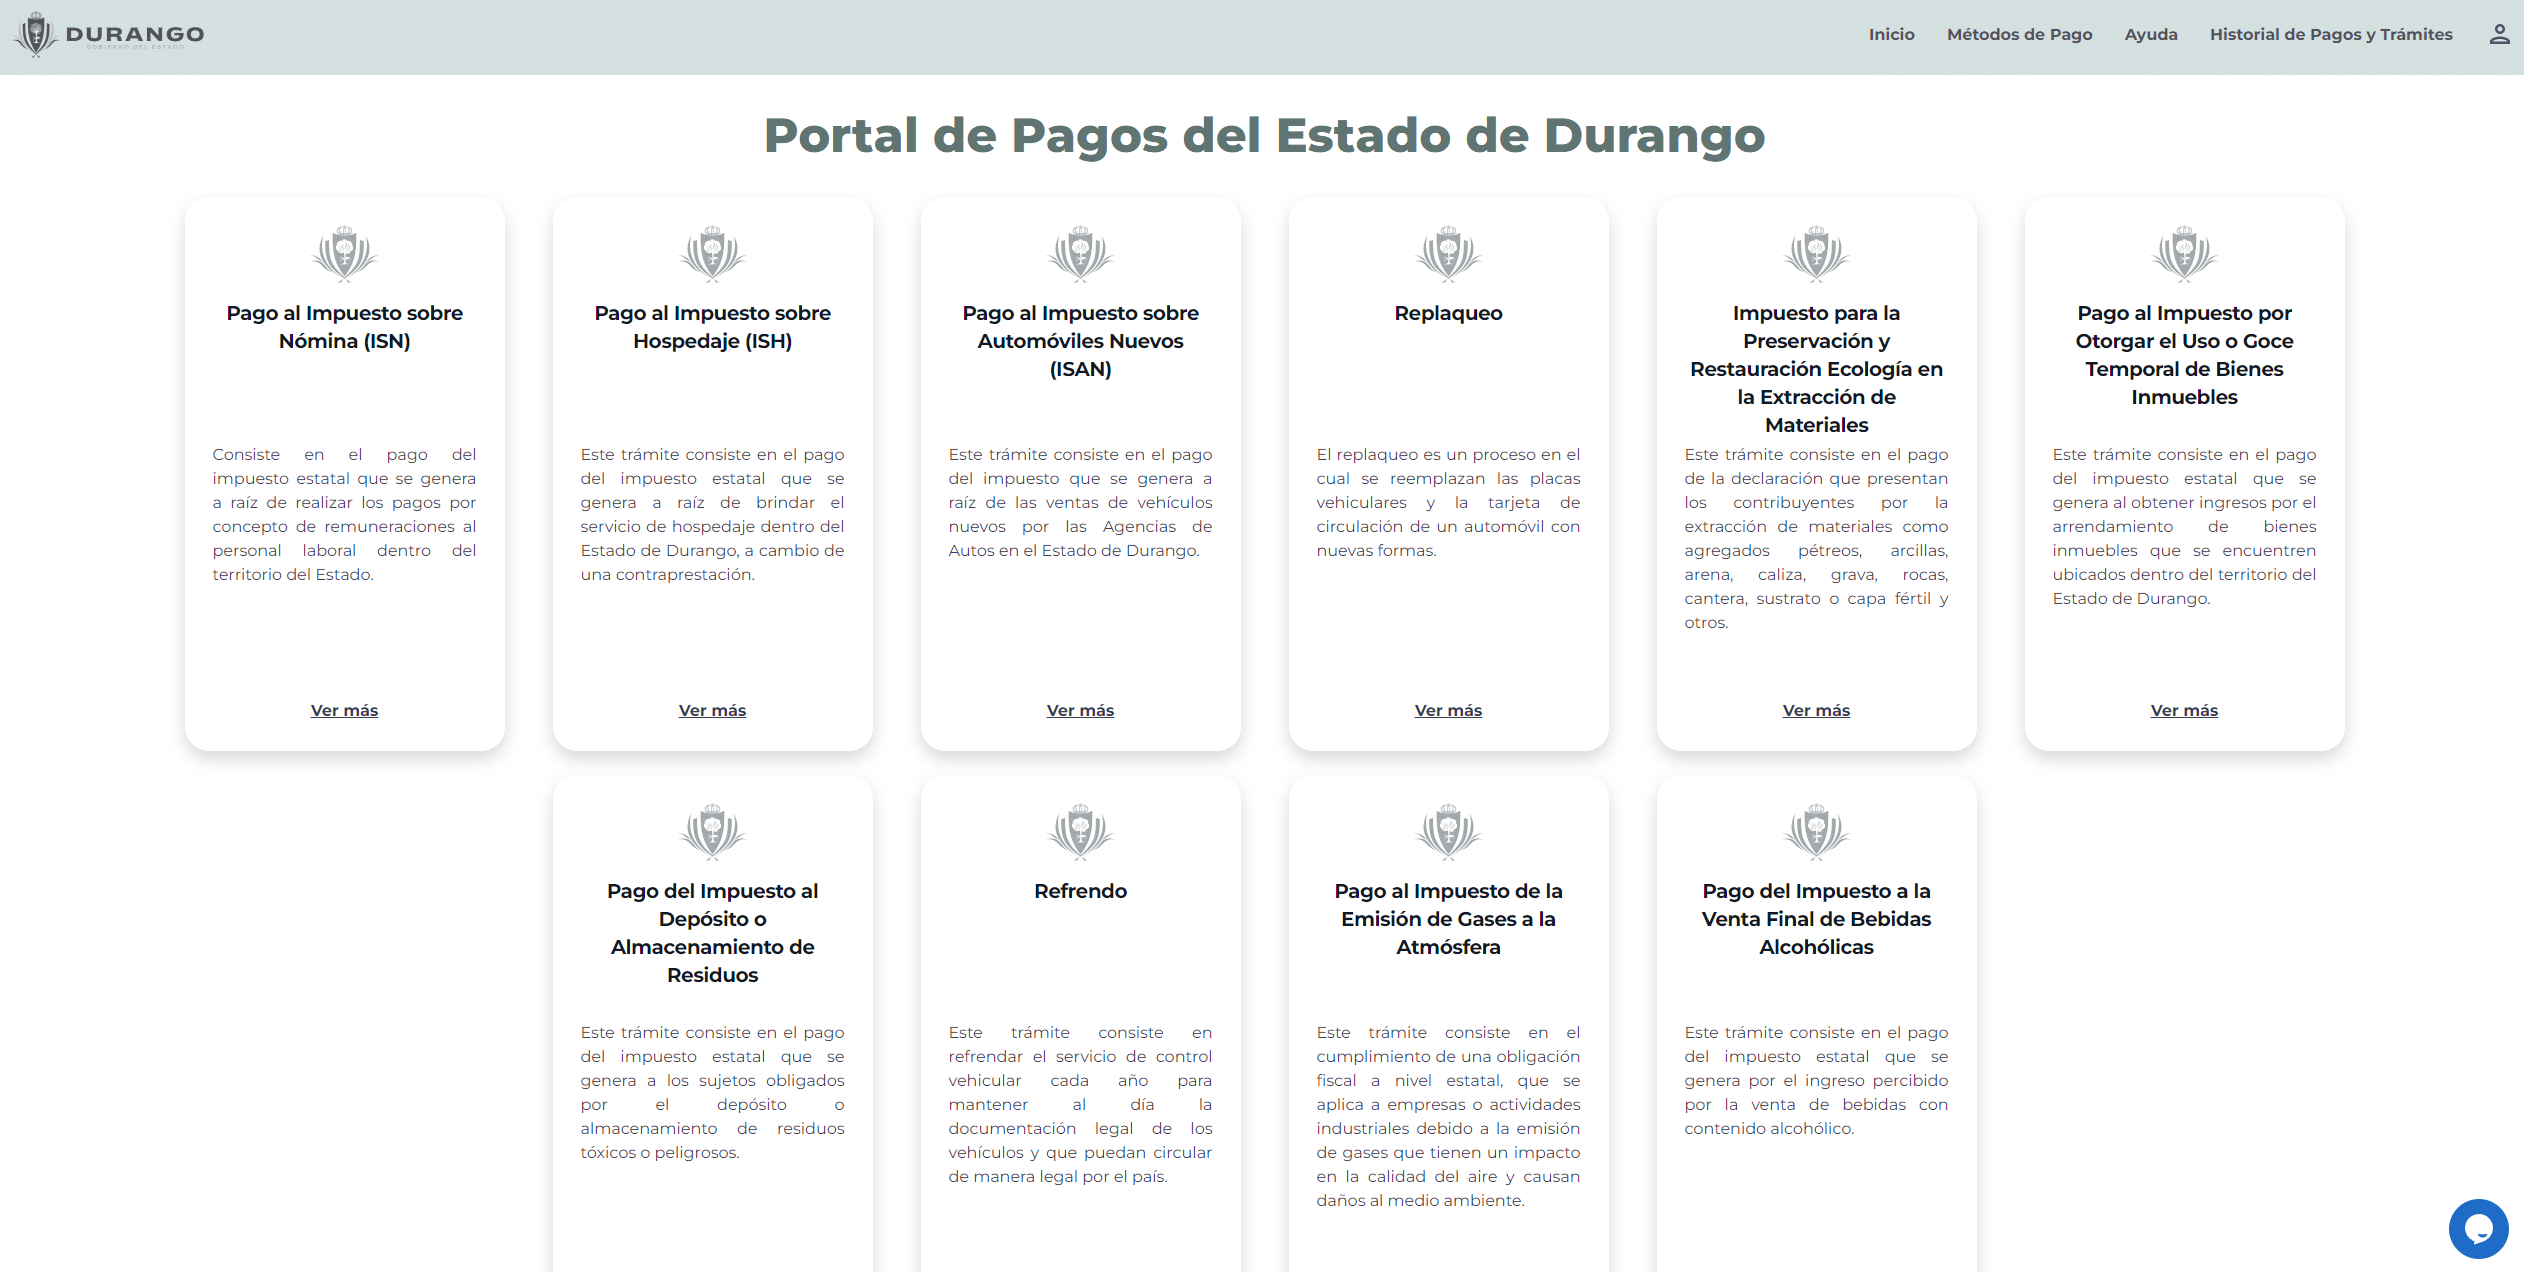 Portal de Pagos del Estado de Durango